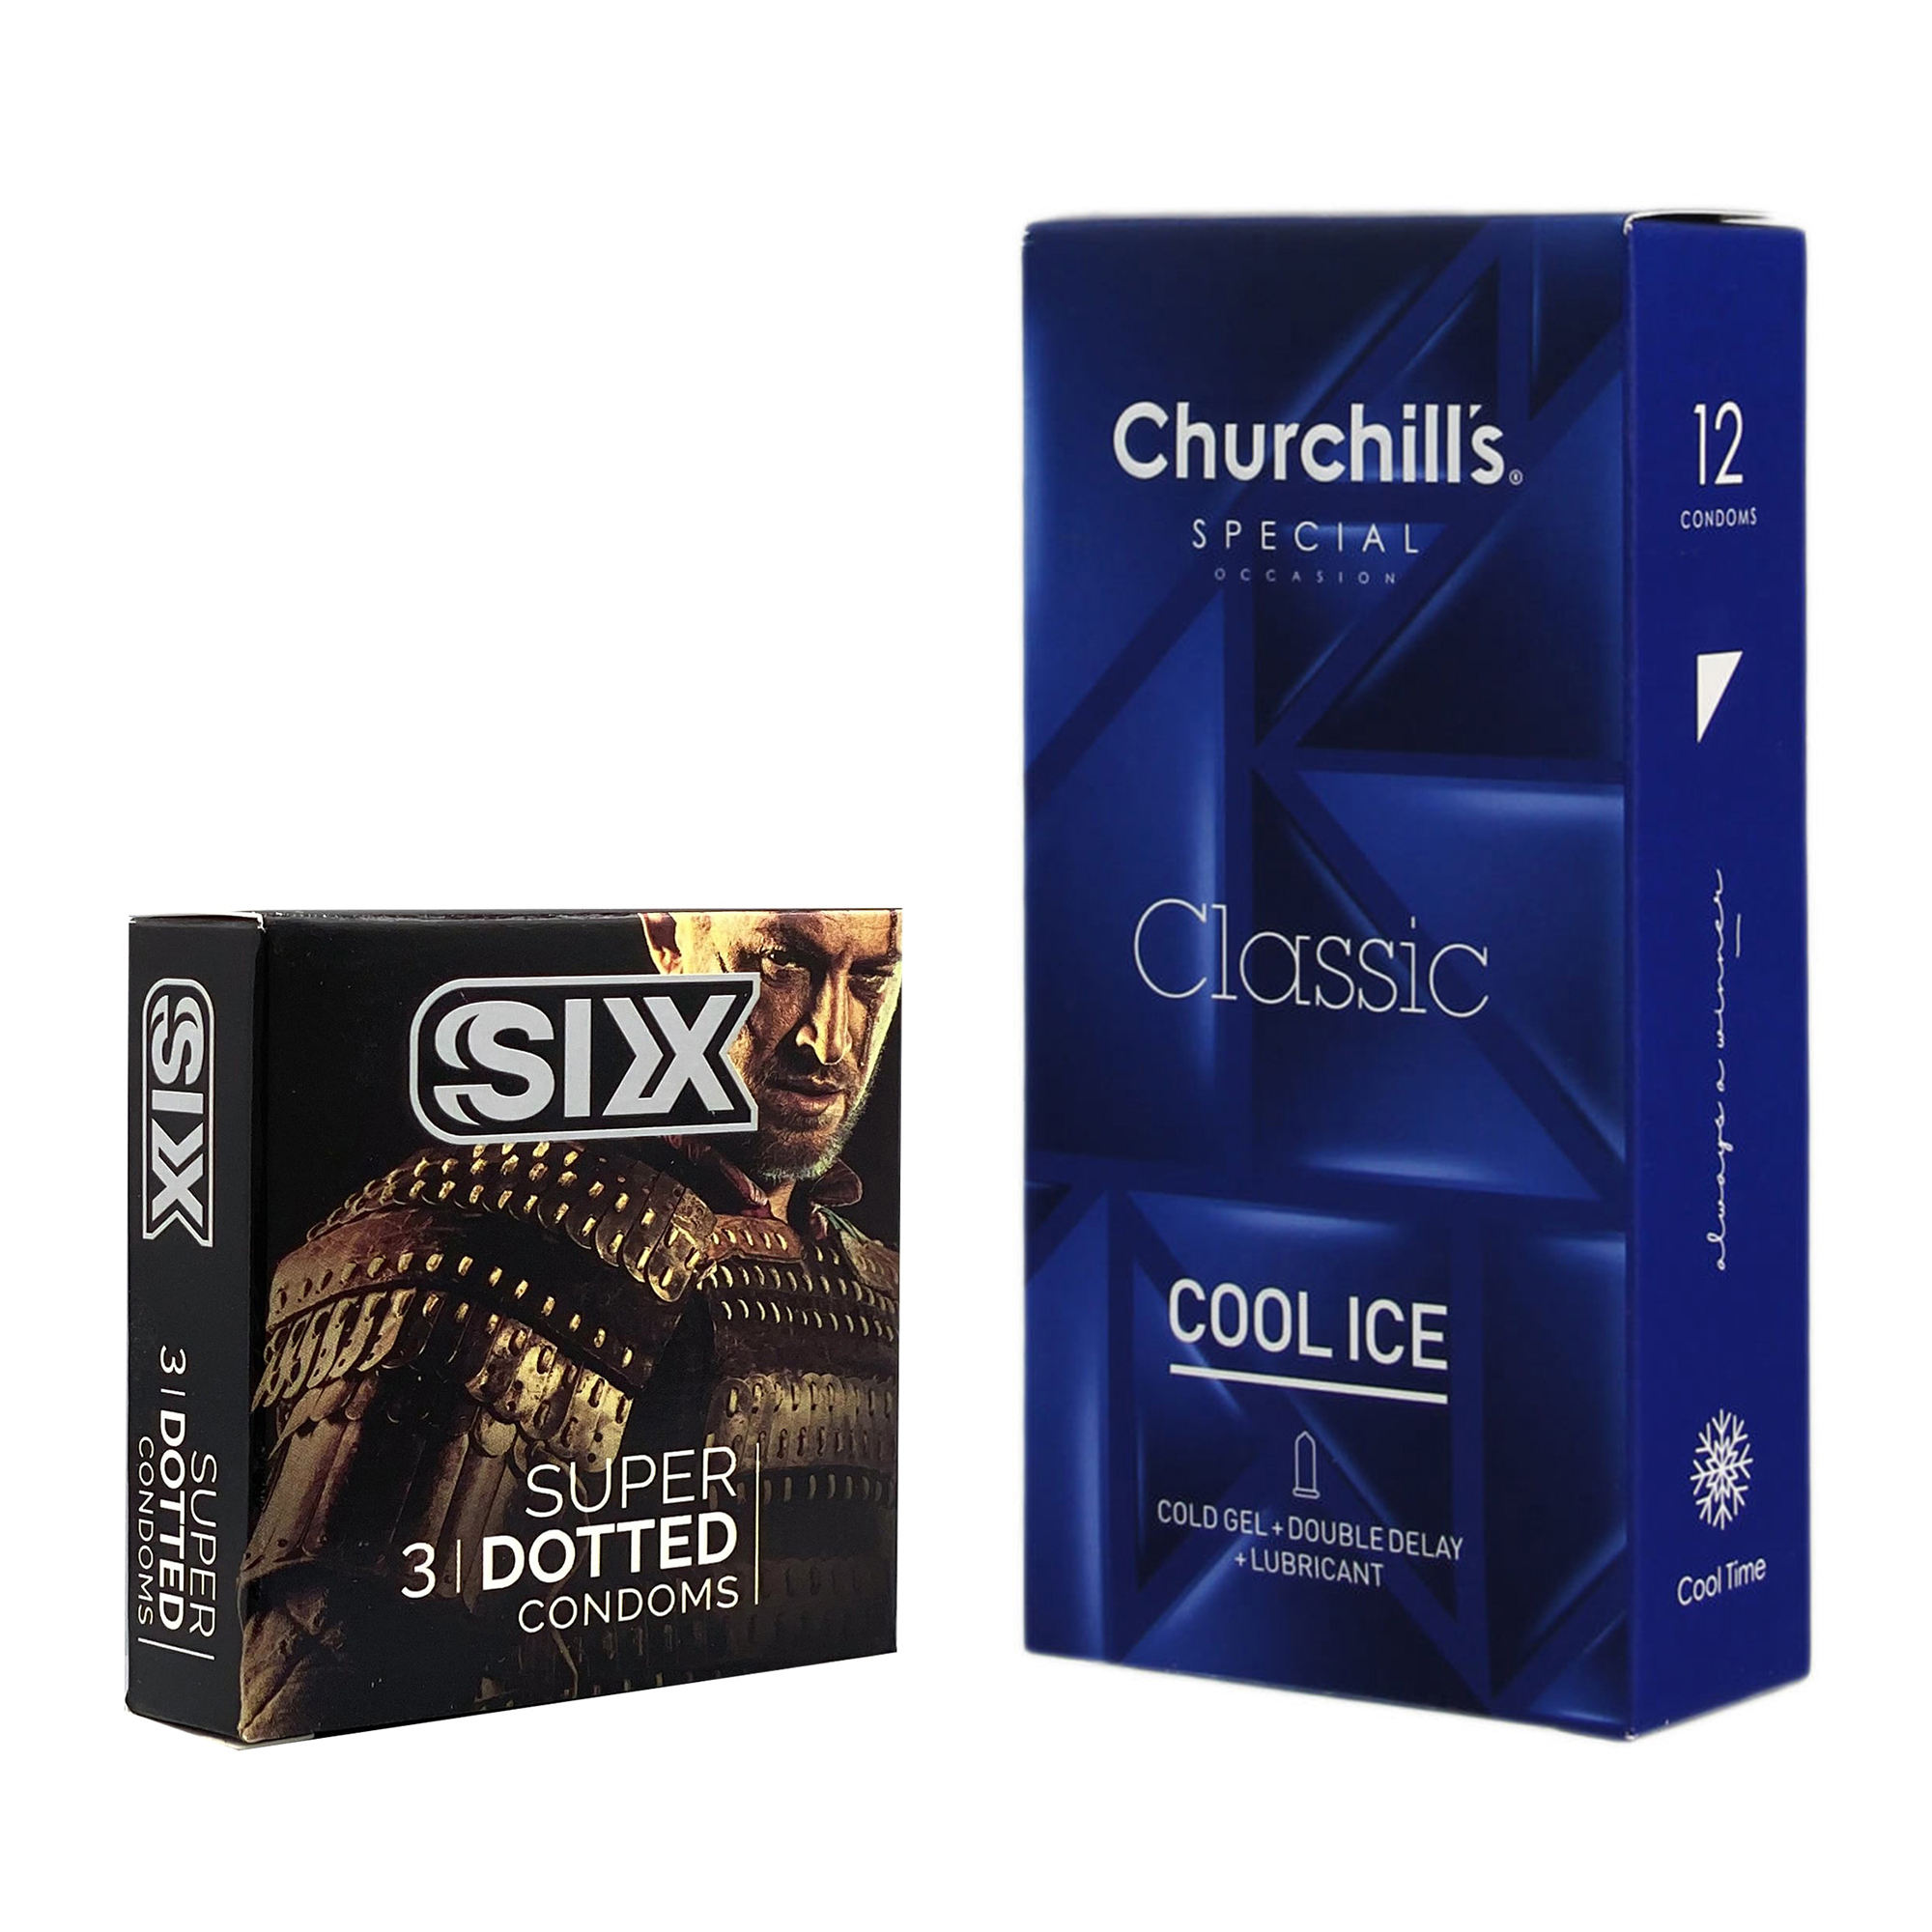 نکته خرید - قیمت روز کاندوم چرچیلز مدل Cool Ice بسته 12 عددی به همراه کاندوم سیکس مدل خاردار بسته 3 عددی خرید